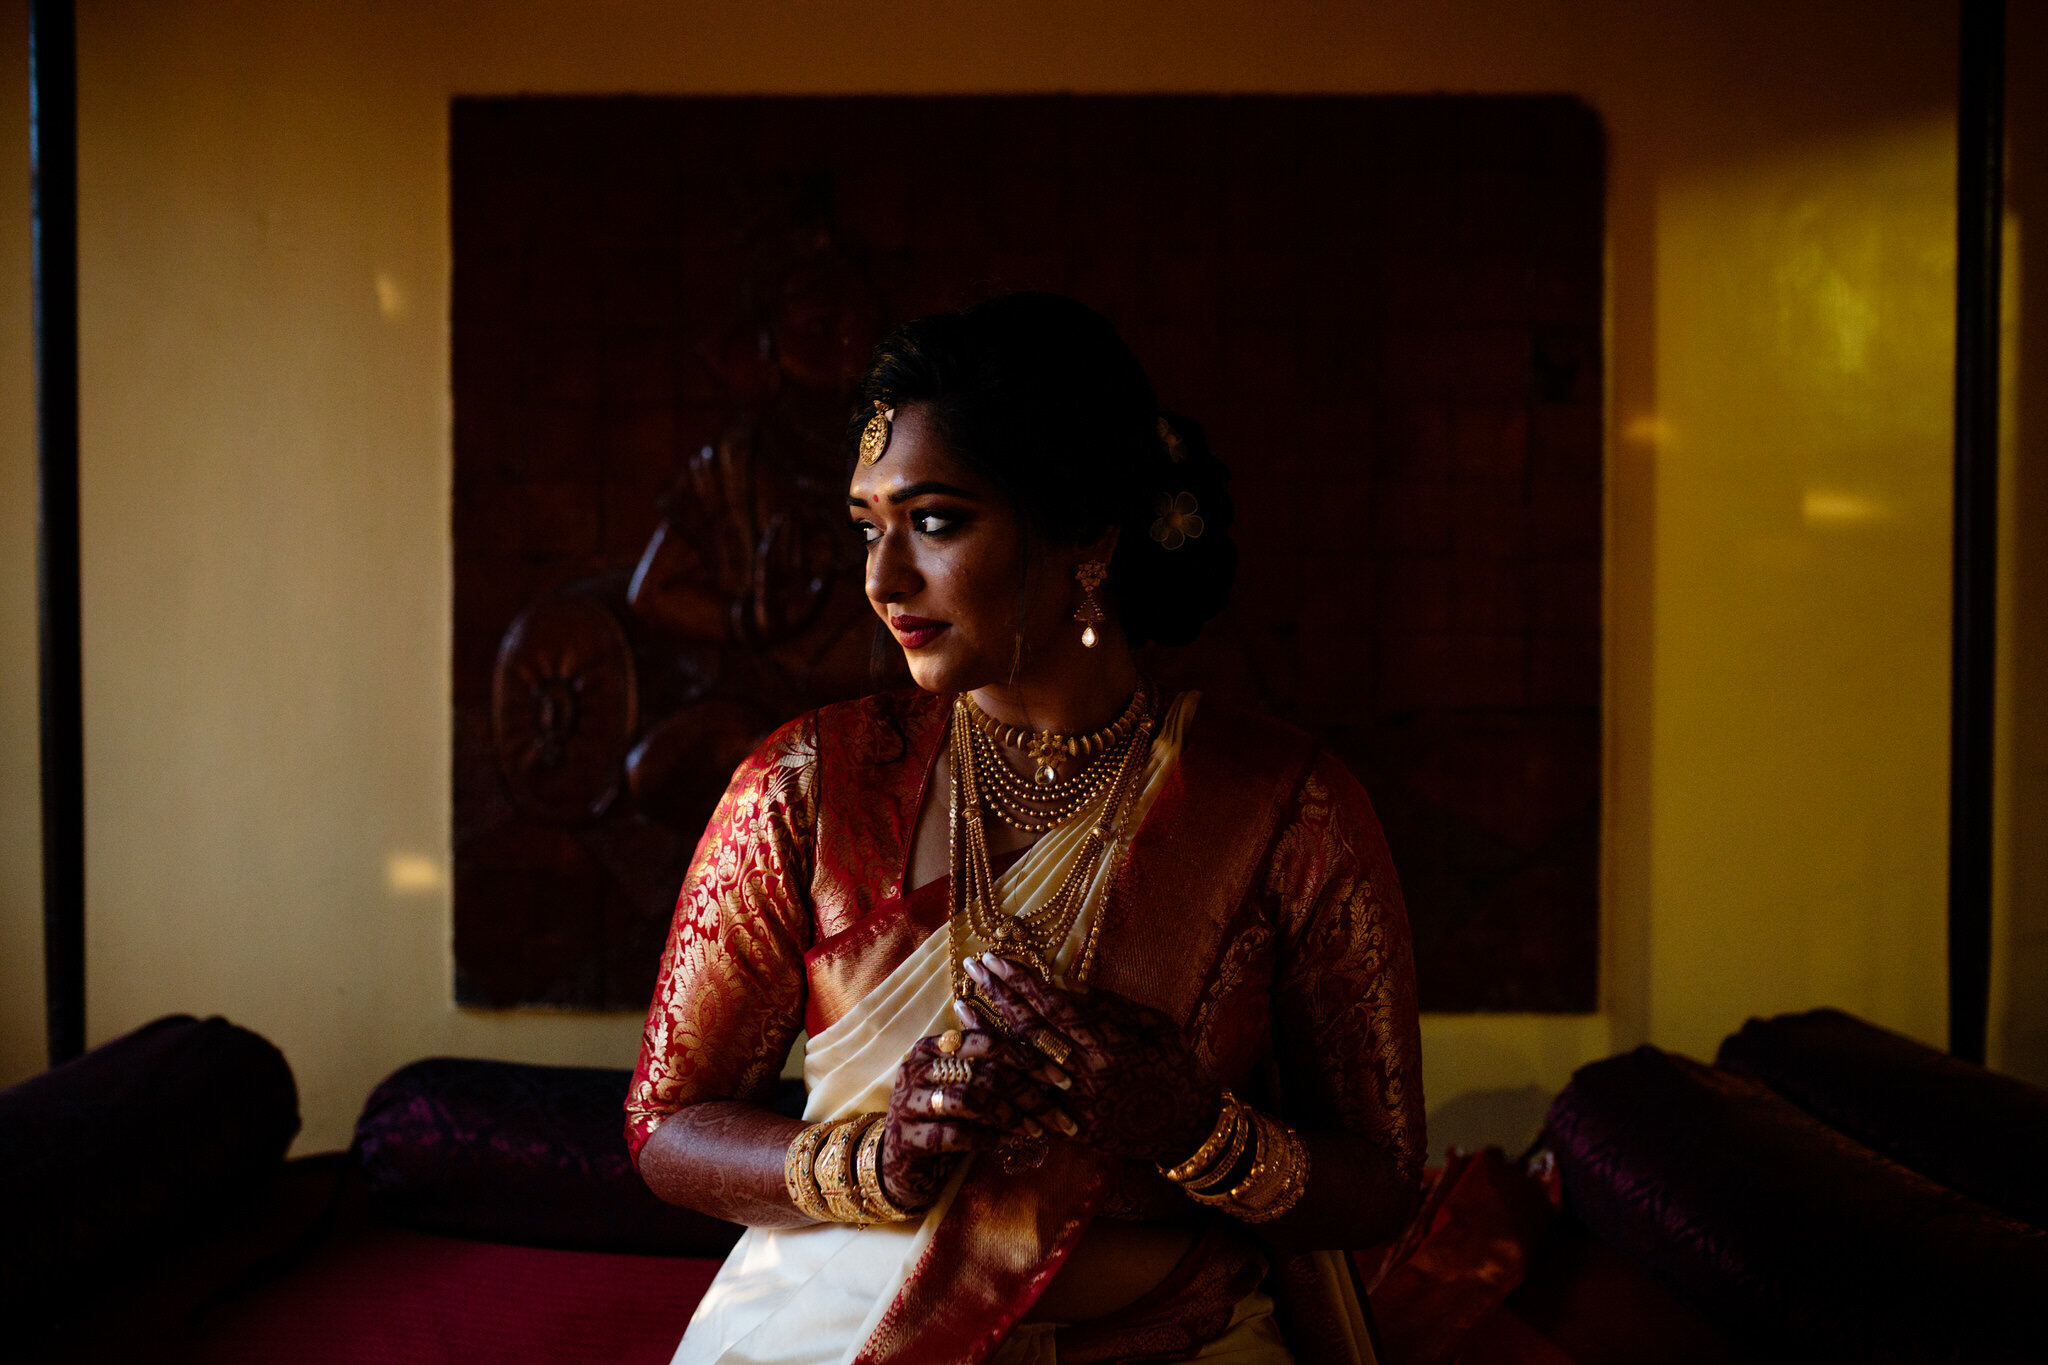 Traditional Kerala Hindu Wedding - Weva Photography